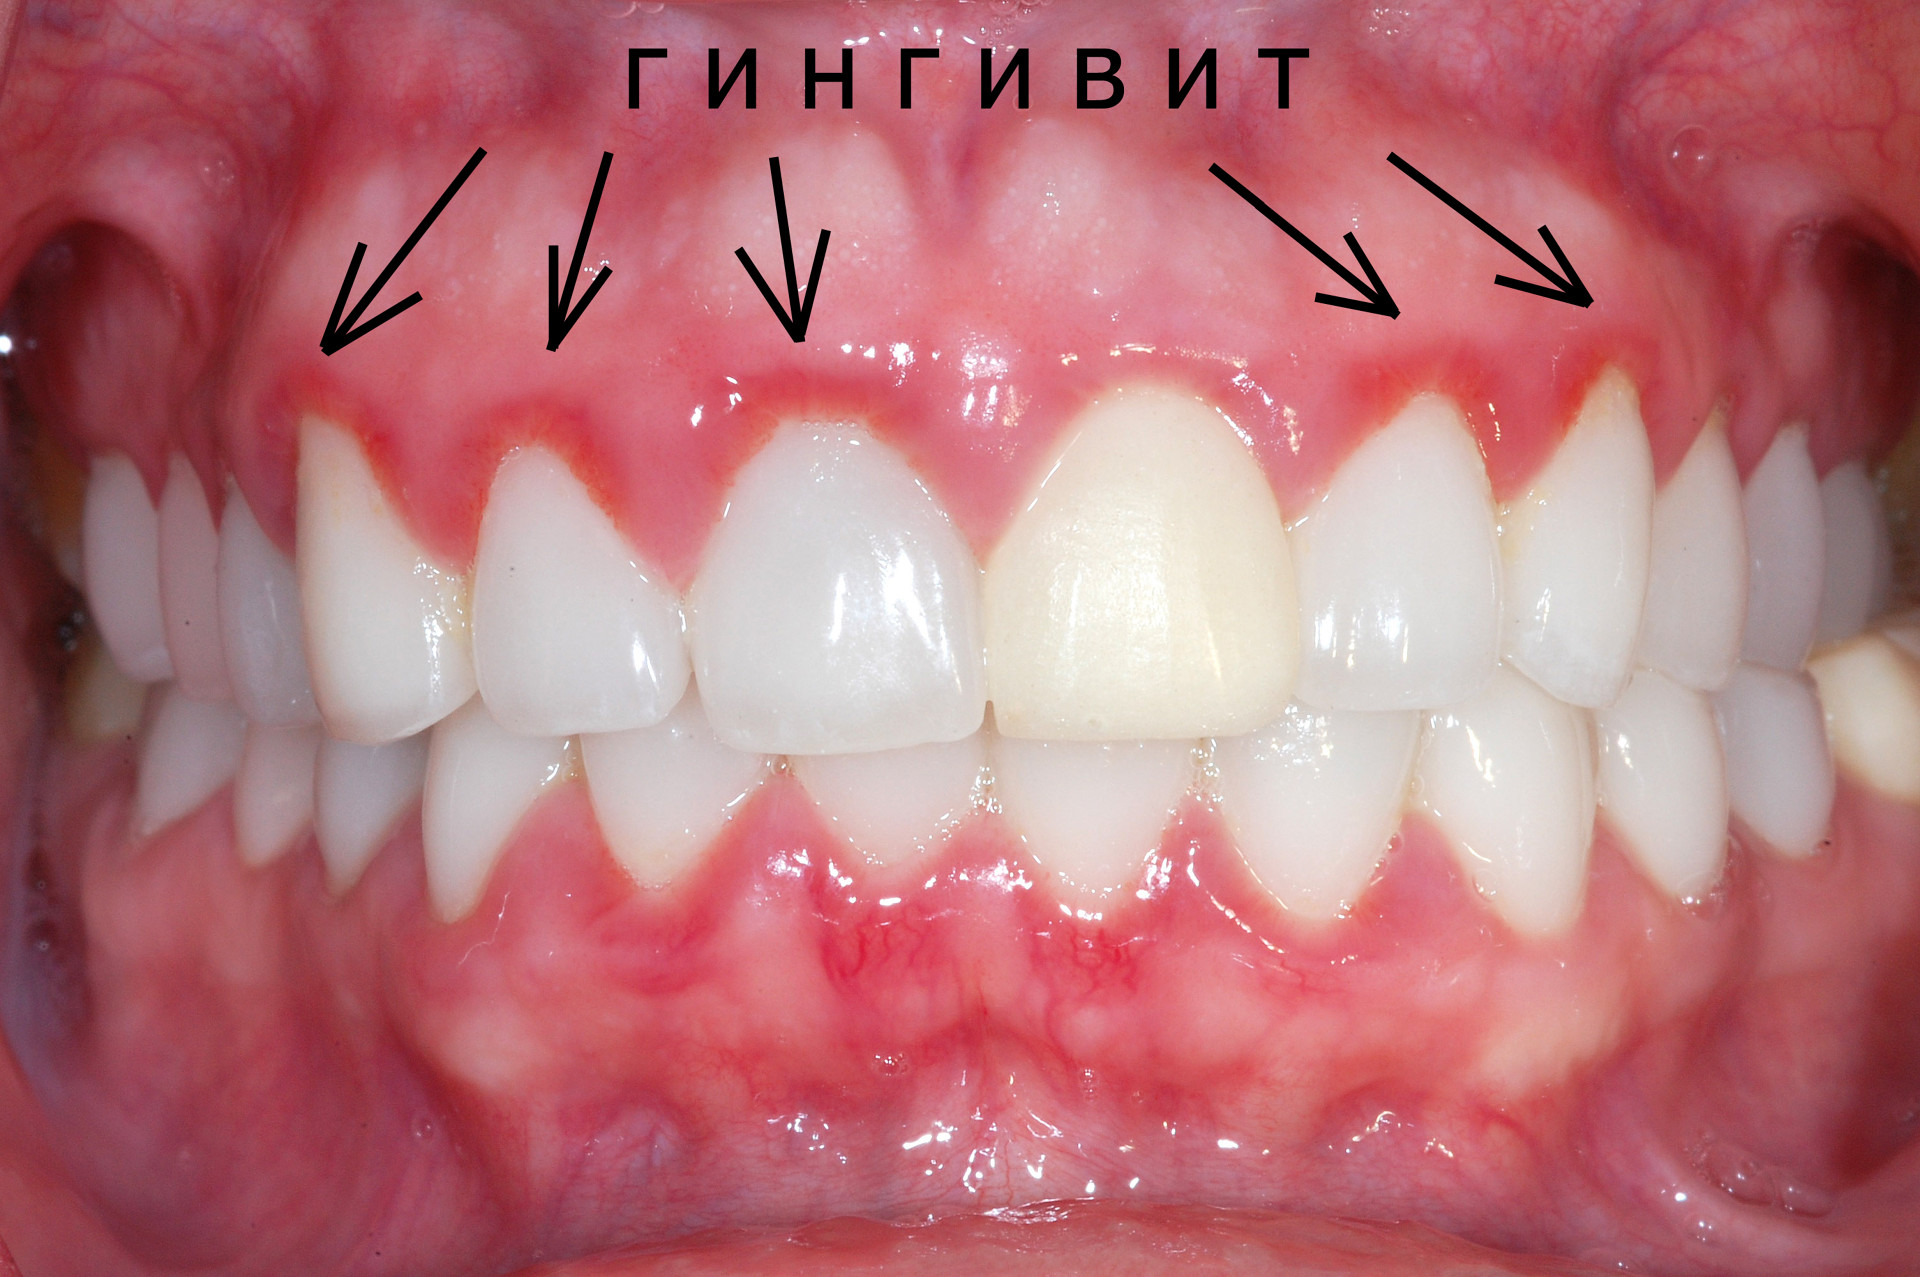 Предлагаем услугу лечения гингивита в Тюмени квалифицированными стоматологами.